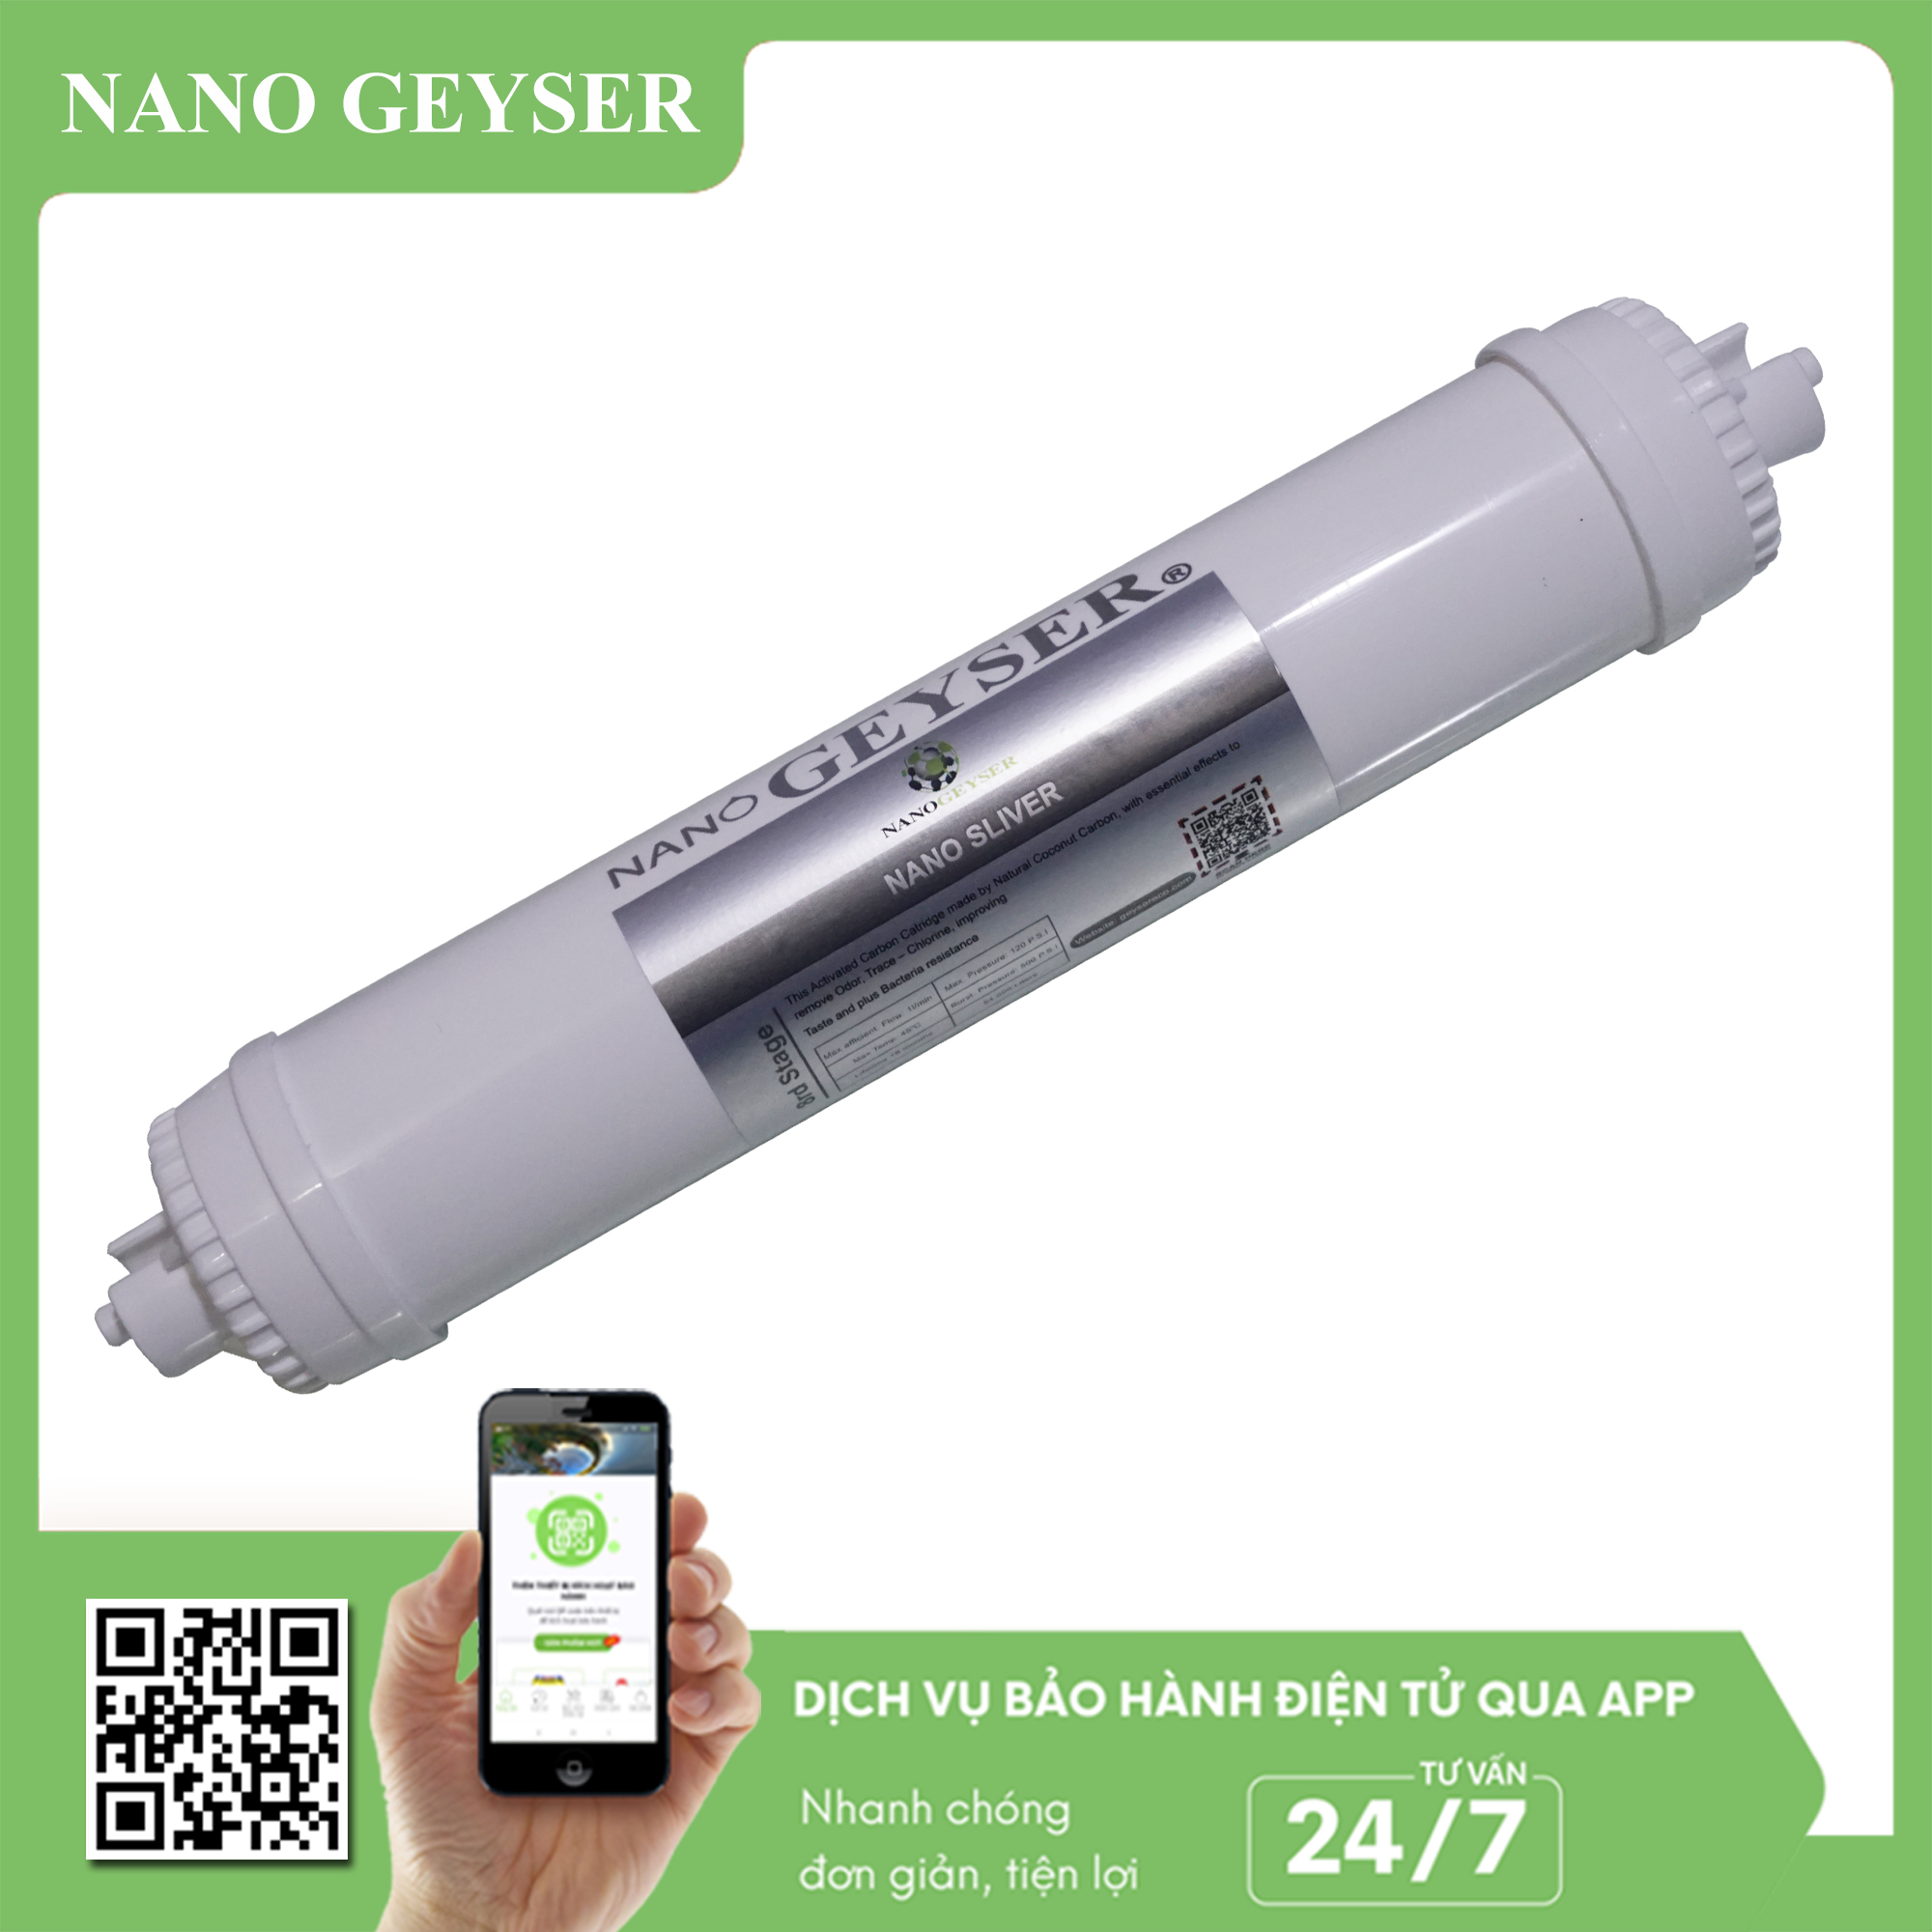 Lõi Nano Silver Ag+ Nano Geyser